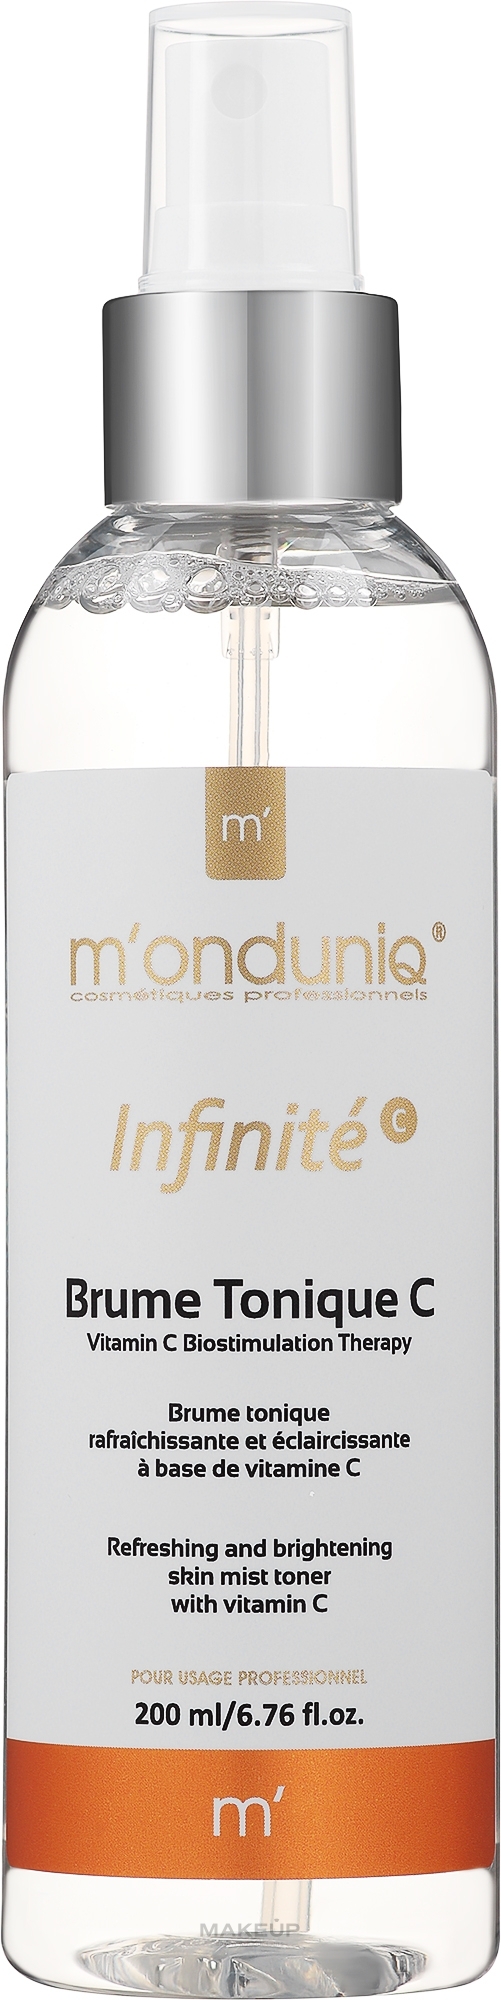 Odświeżająca mgiełka do twarzy z witaminą C - M'onduniq Infinite Mist Toner With Vitamin C — Zdjęcie 200 ml